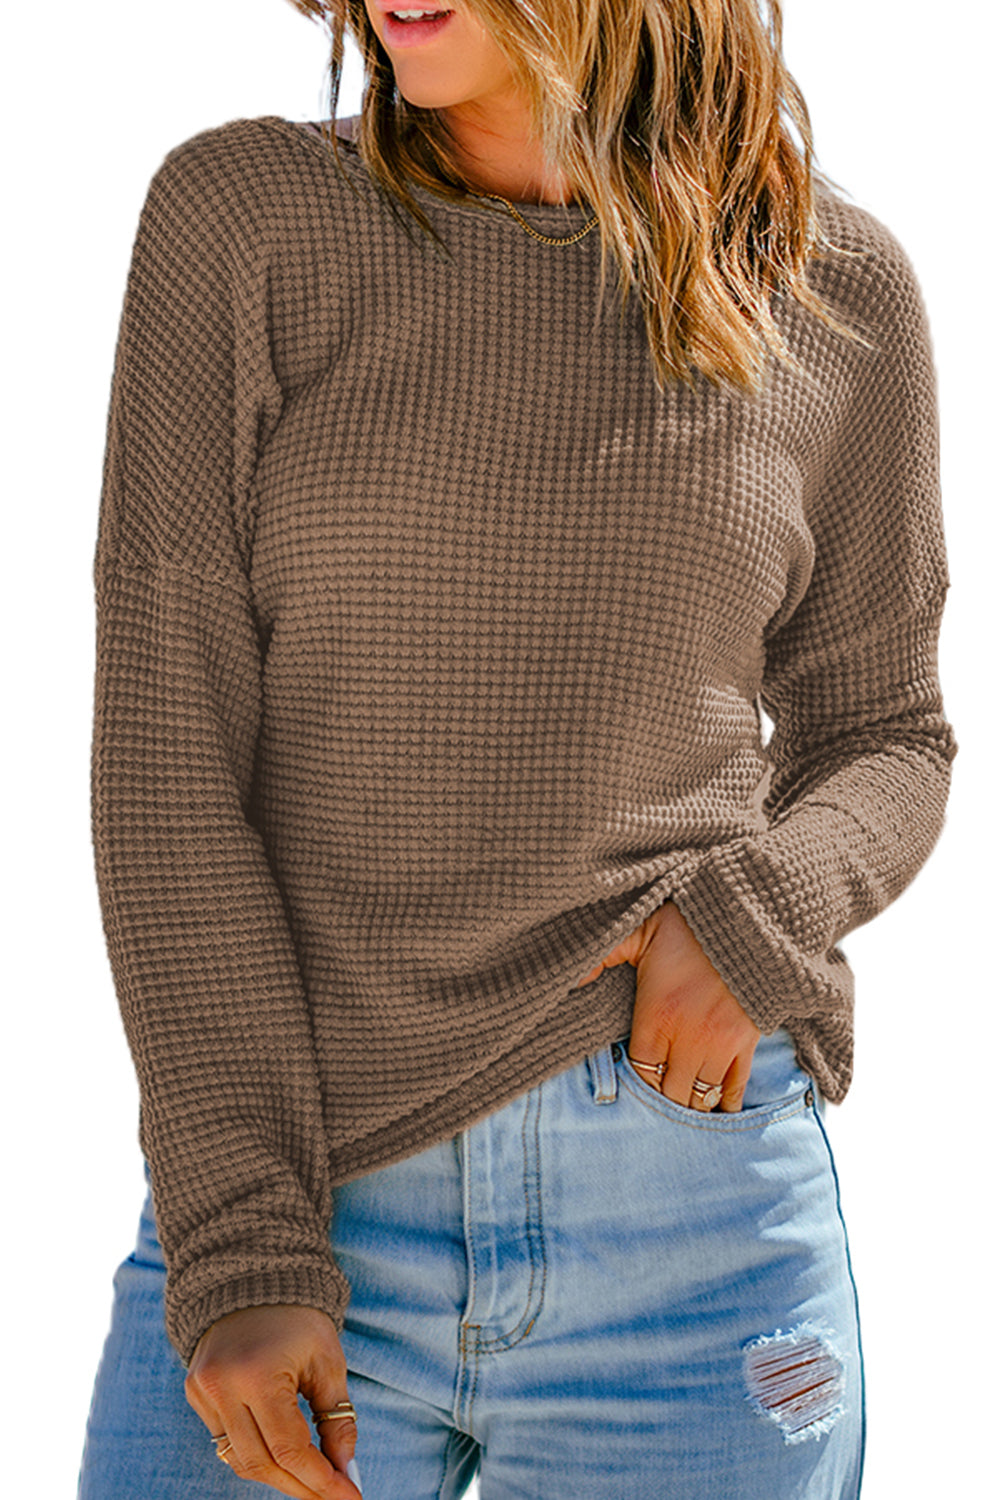 Temno rjava vafelj pletena majica z dolgimi rokavi na spuščena ramena